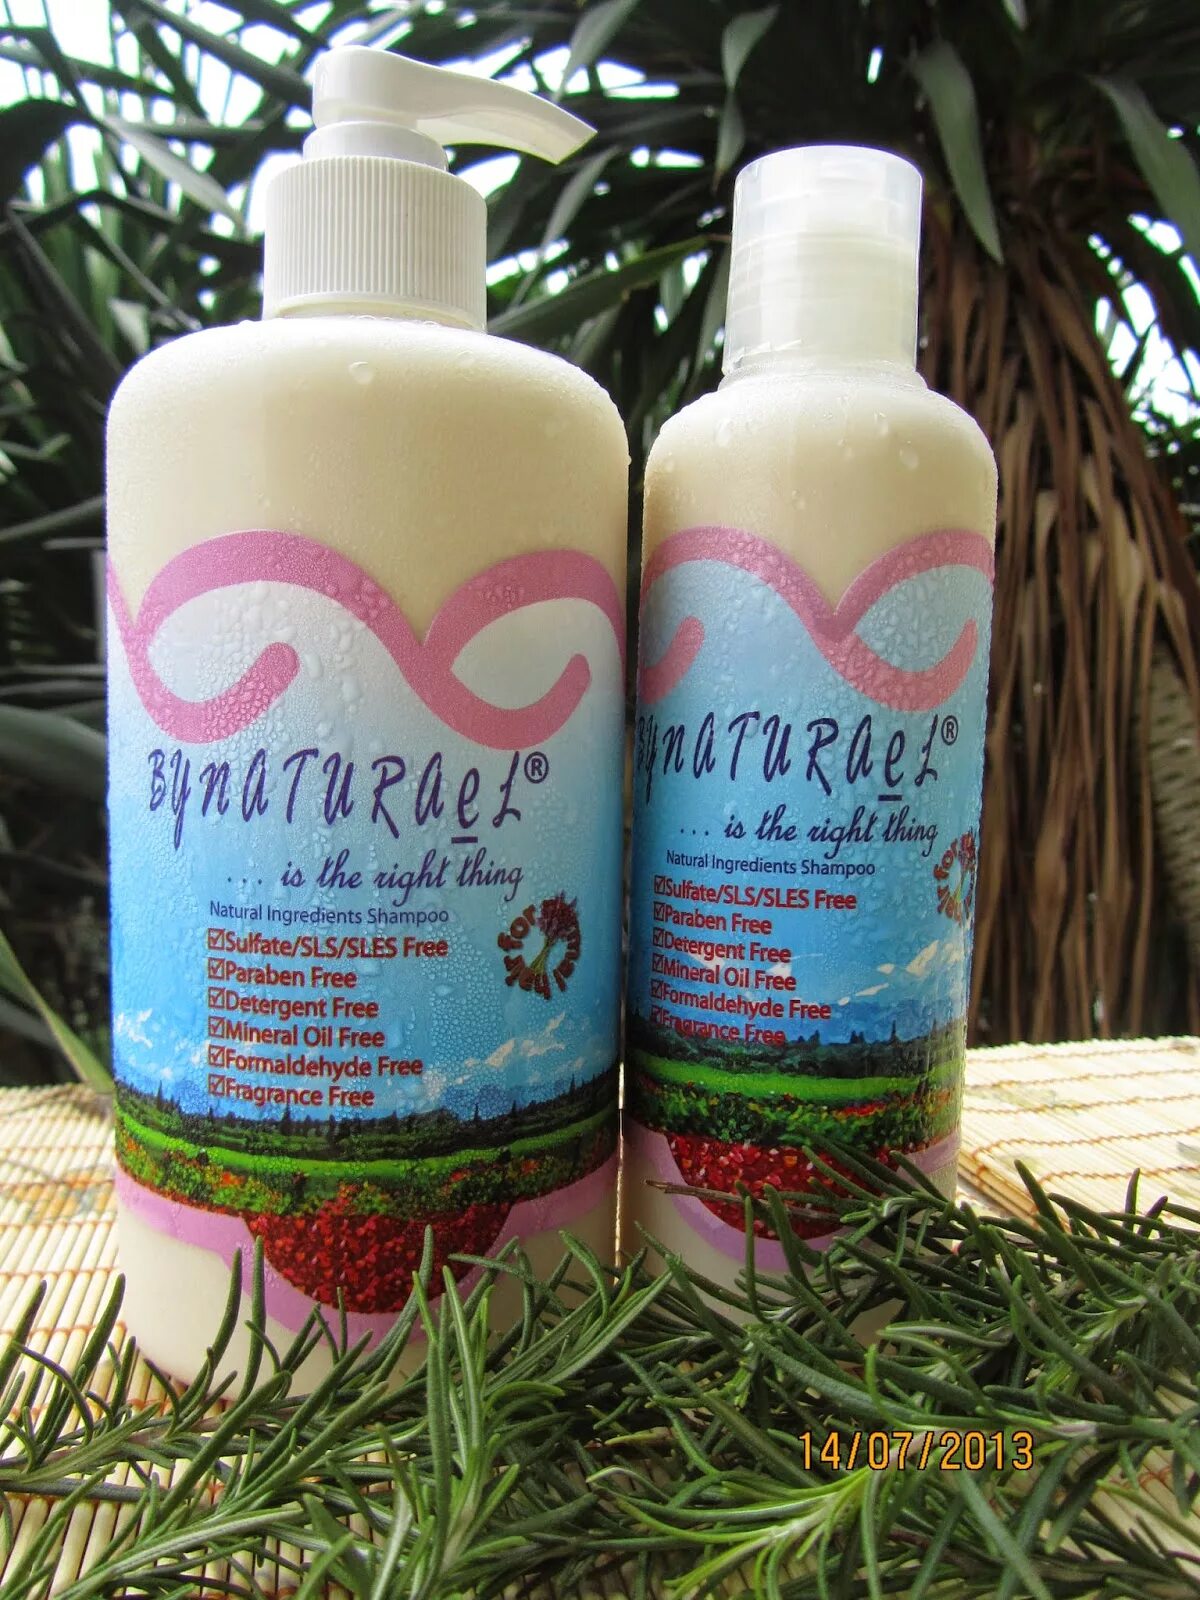 Natural shampoo. Natural ingredients шампунь. Nature Shampoo. SLS В шампуне. Shampoo with natural ingredients.